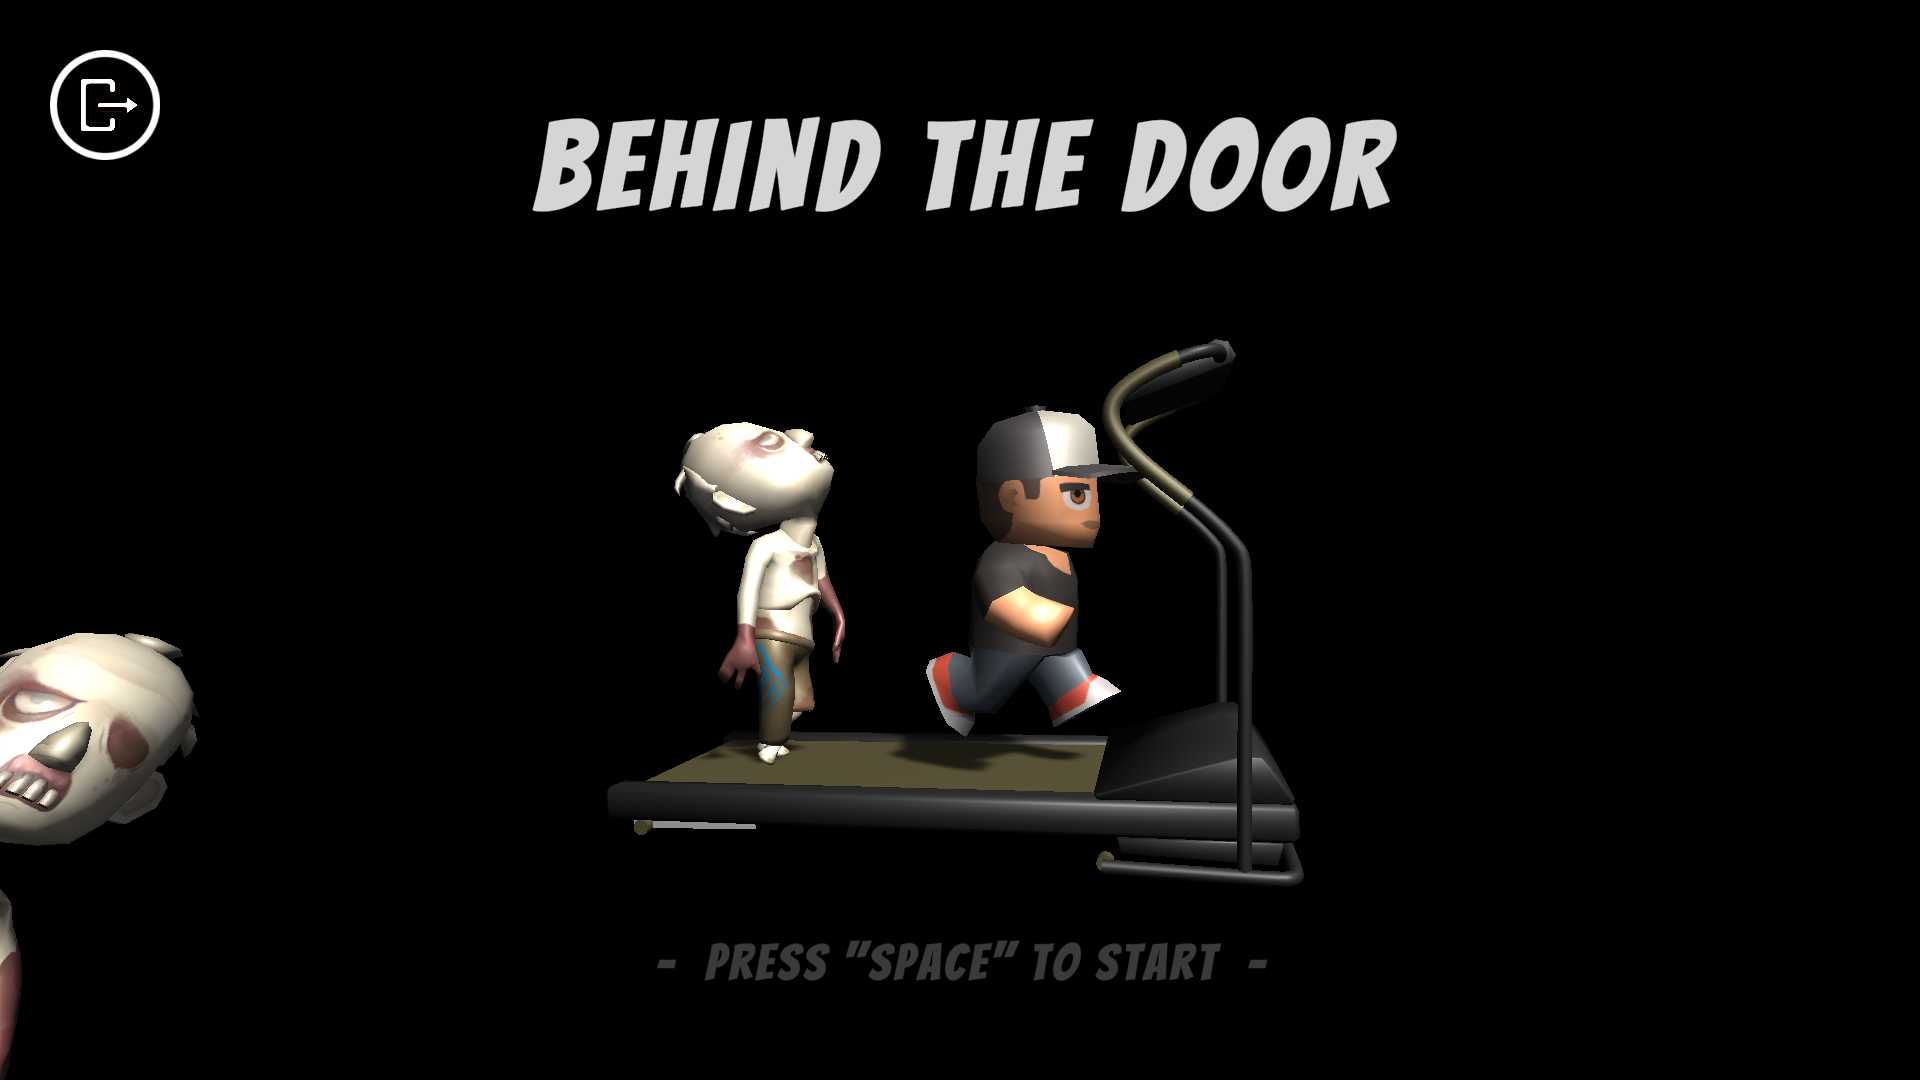 Behind the Door